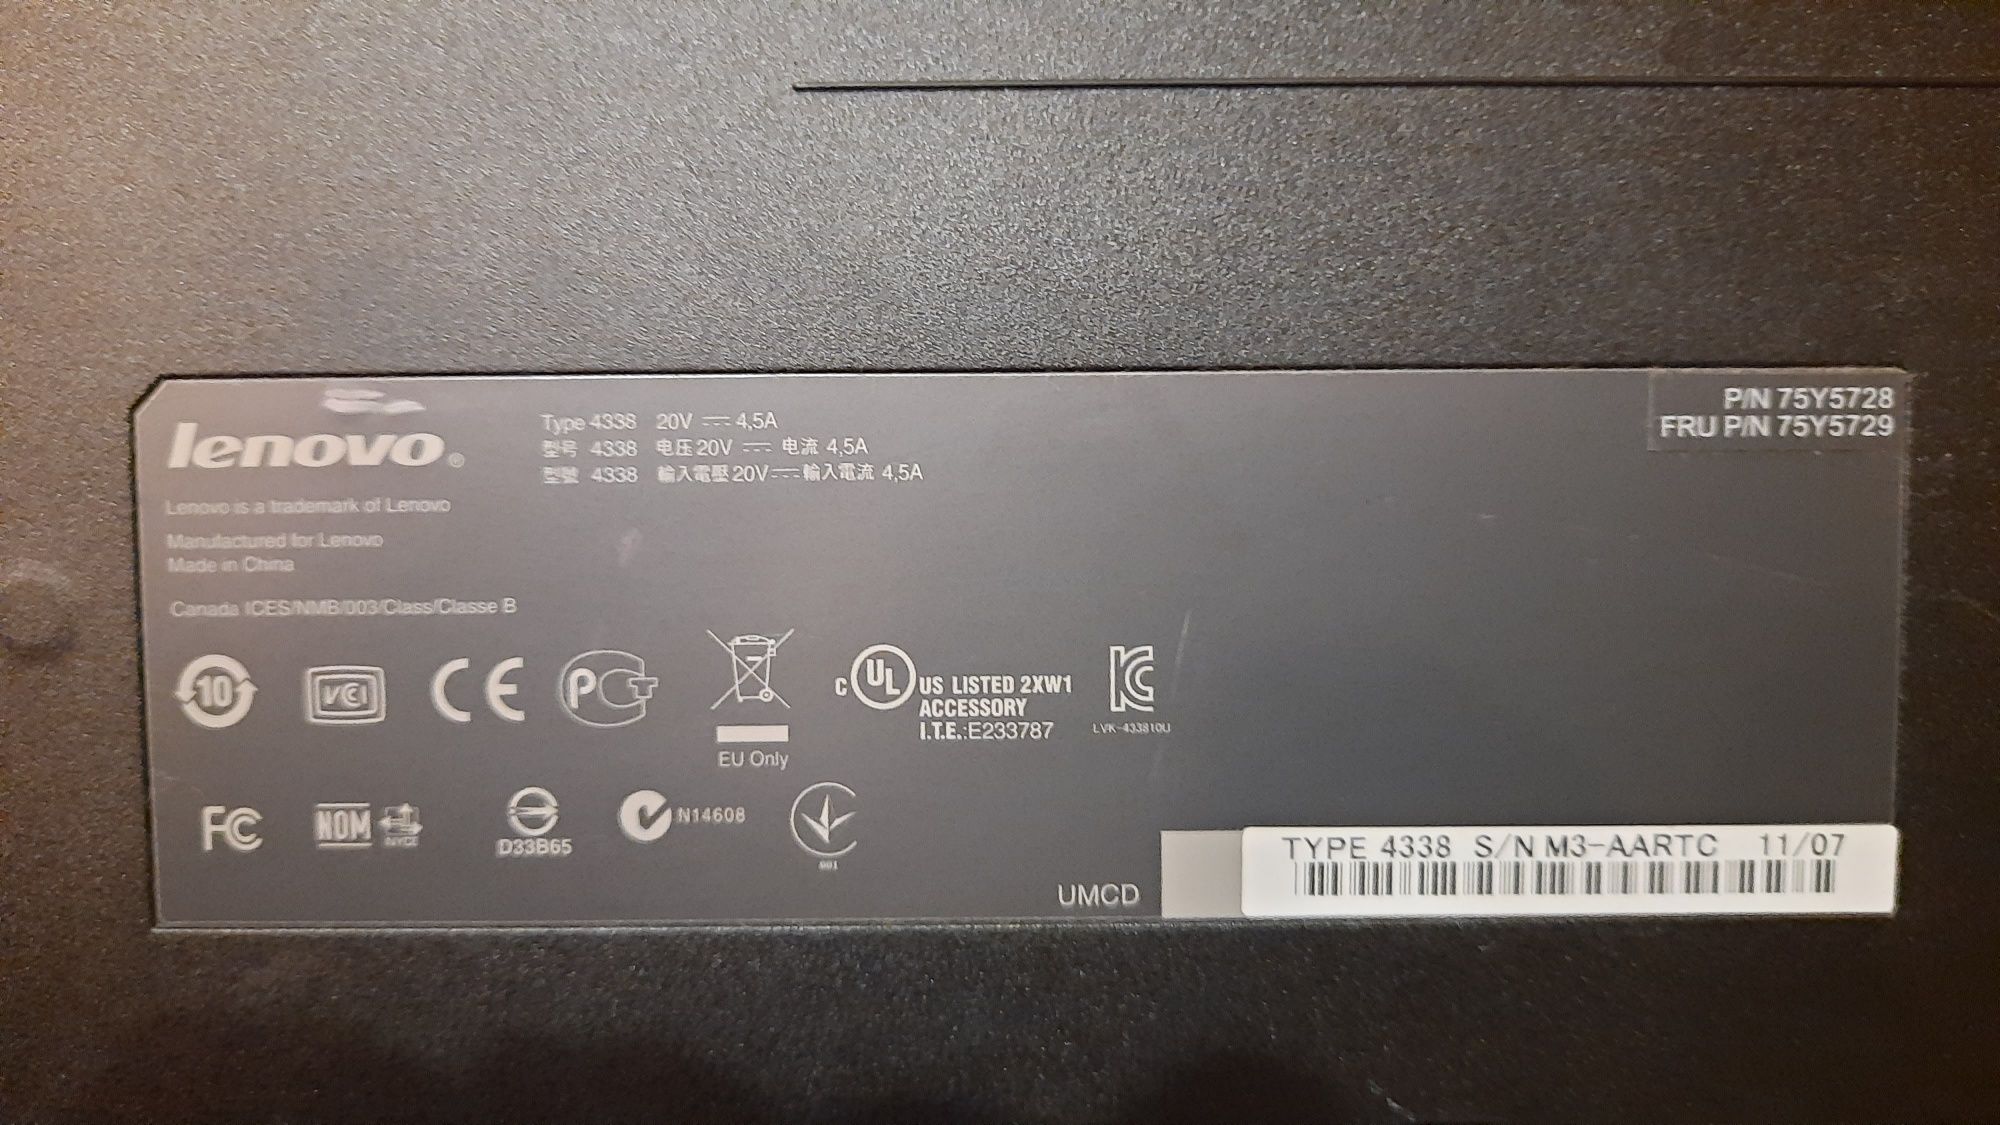 Док-станция Lenovo ThinkPad Dock Plus Series 3 Type 4338